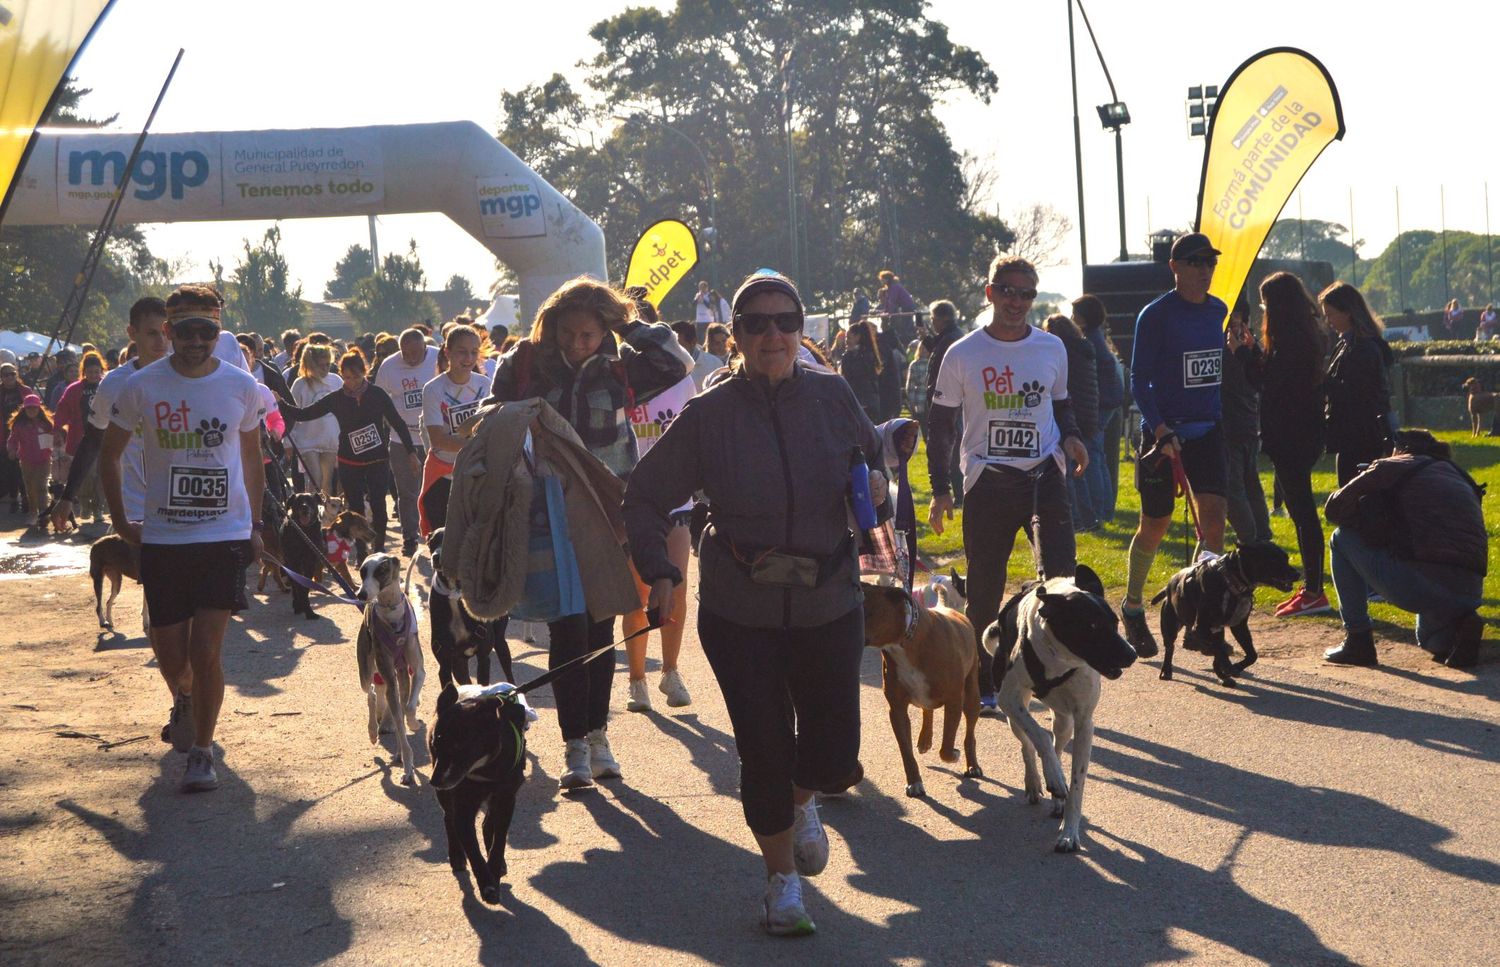 La ONG Palestra impulsa la segunda edición de PetRun, la caminata solidaria que incluye a las mascotas en una actividad familiar, saludable y con fines solidarios.